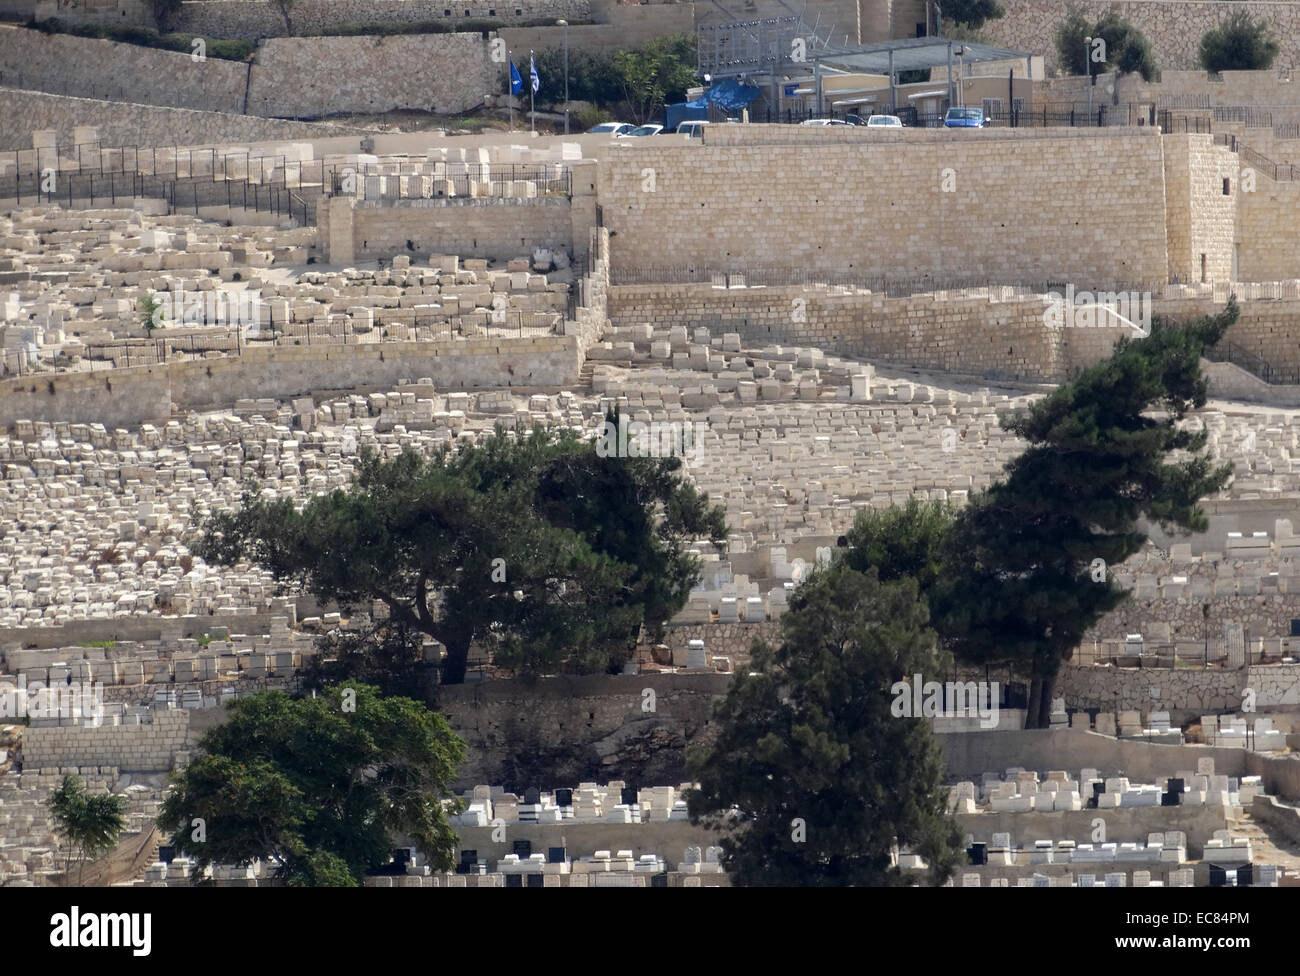 Le Mont des Oliviers à côté de la vieille ville de Jérusalem, est nommé pour les oliveraies qui couvrait jadis ses pentes. La partie sud de la montagne était la nécropole de l'ancien royaume de Judée. Le mont a été utilisé comme un cimetière juif depuis plus de 3000 ans et est titulaire d'environ 150 000 tombes. Banque D'Images